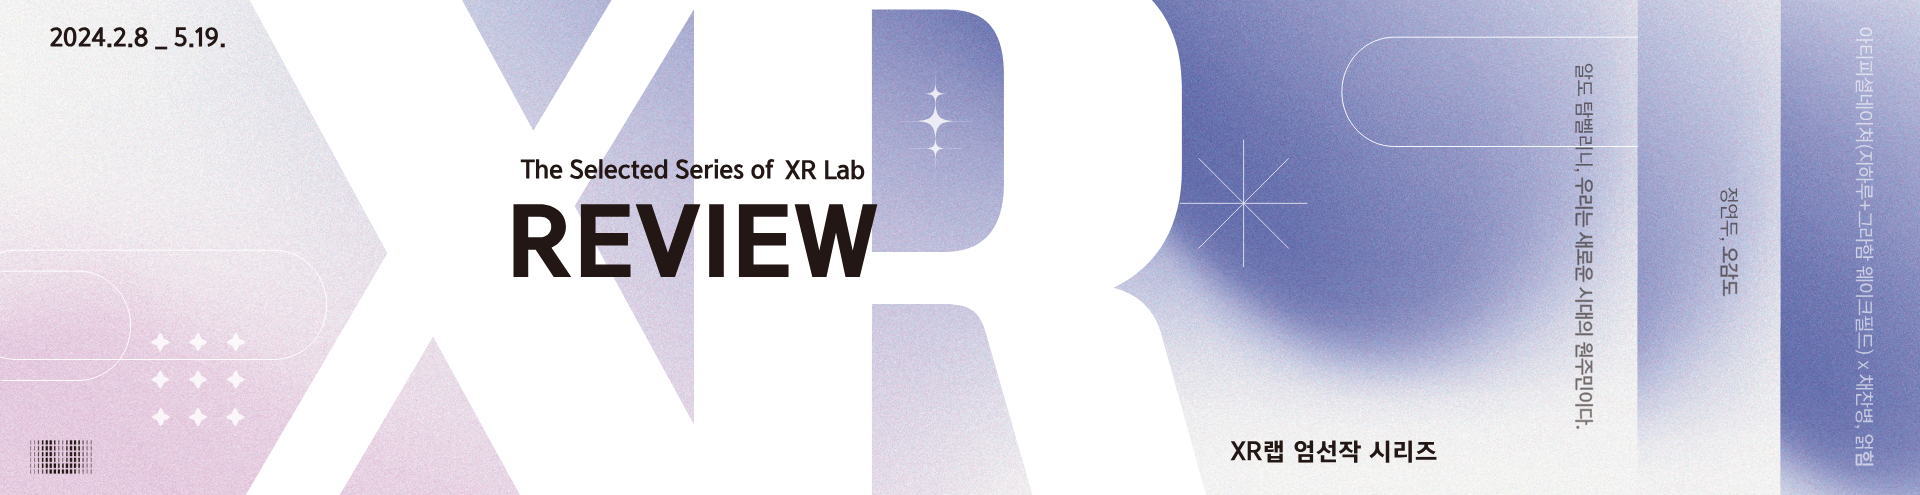 XR Lab 엄선작 시리즈 ≪ XR Lab 리뷰 ≫